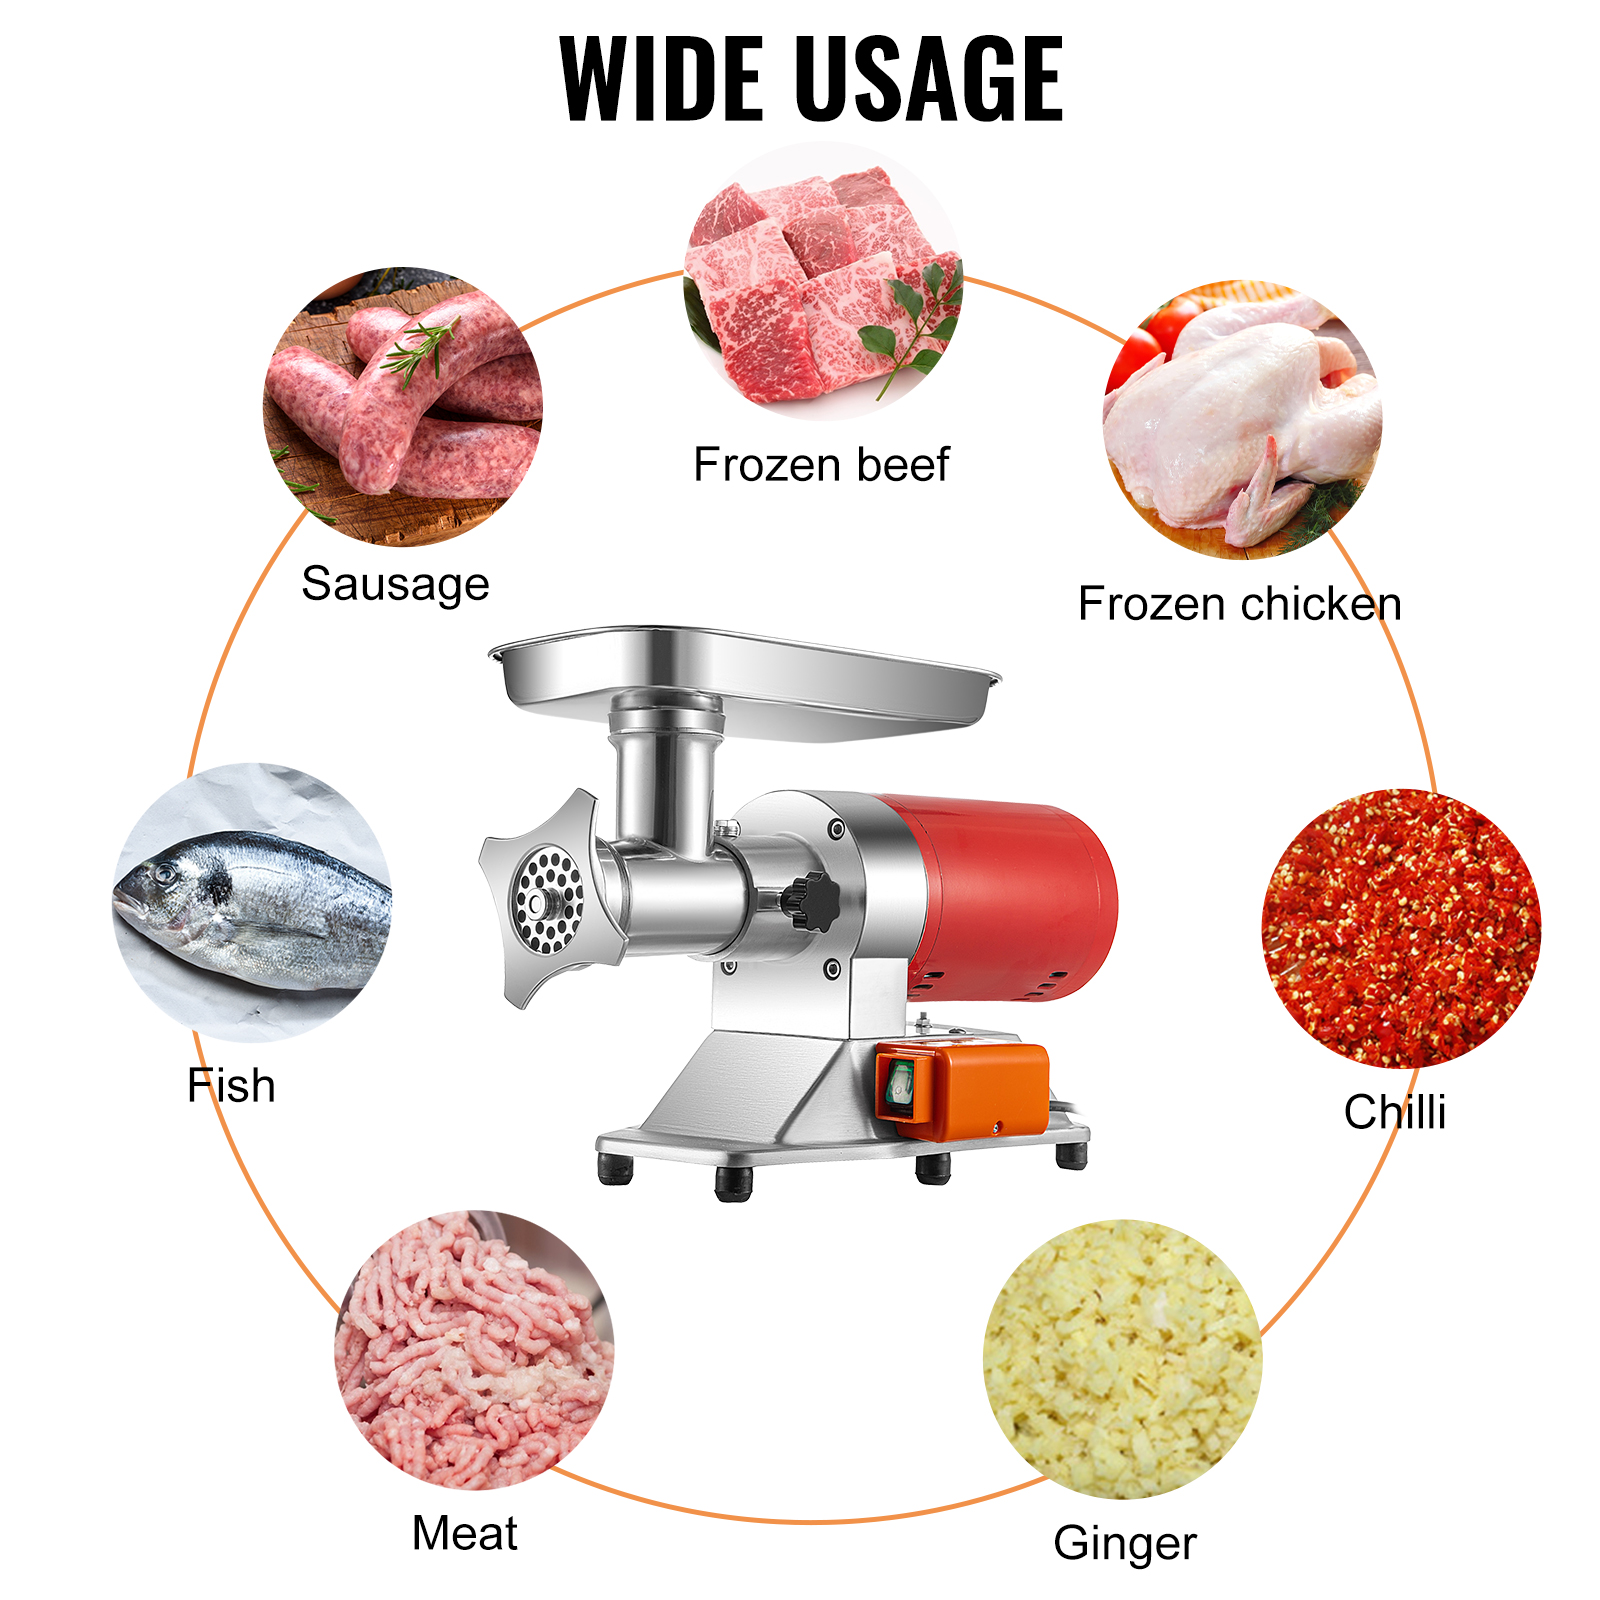 VEVOR 850 W Electric Meat Grinder 551 lb./Hour Meat Grinder